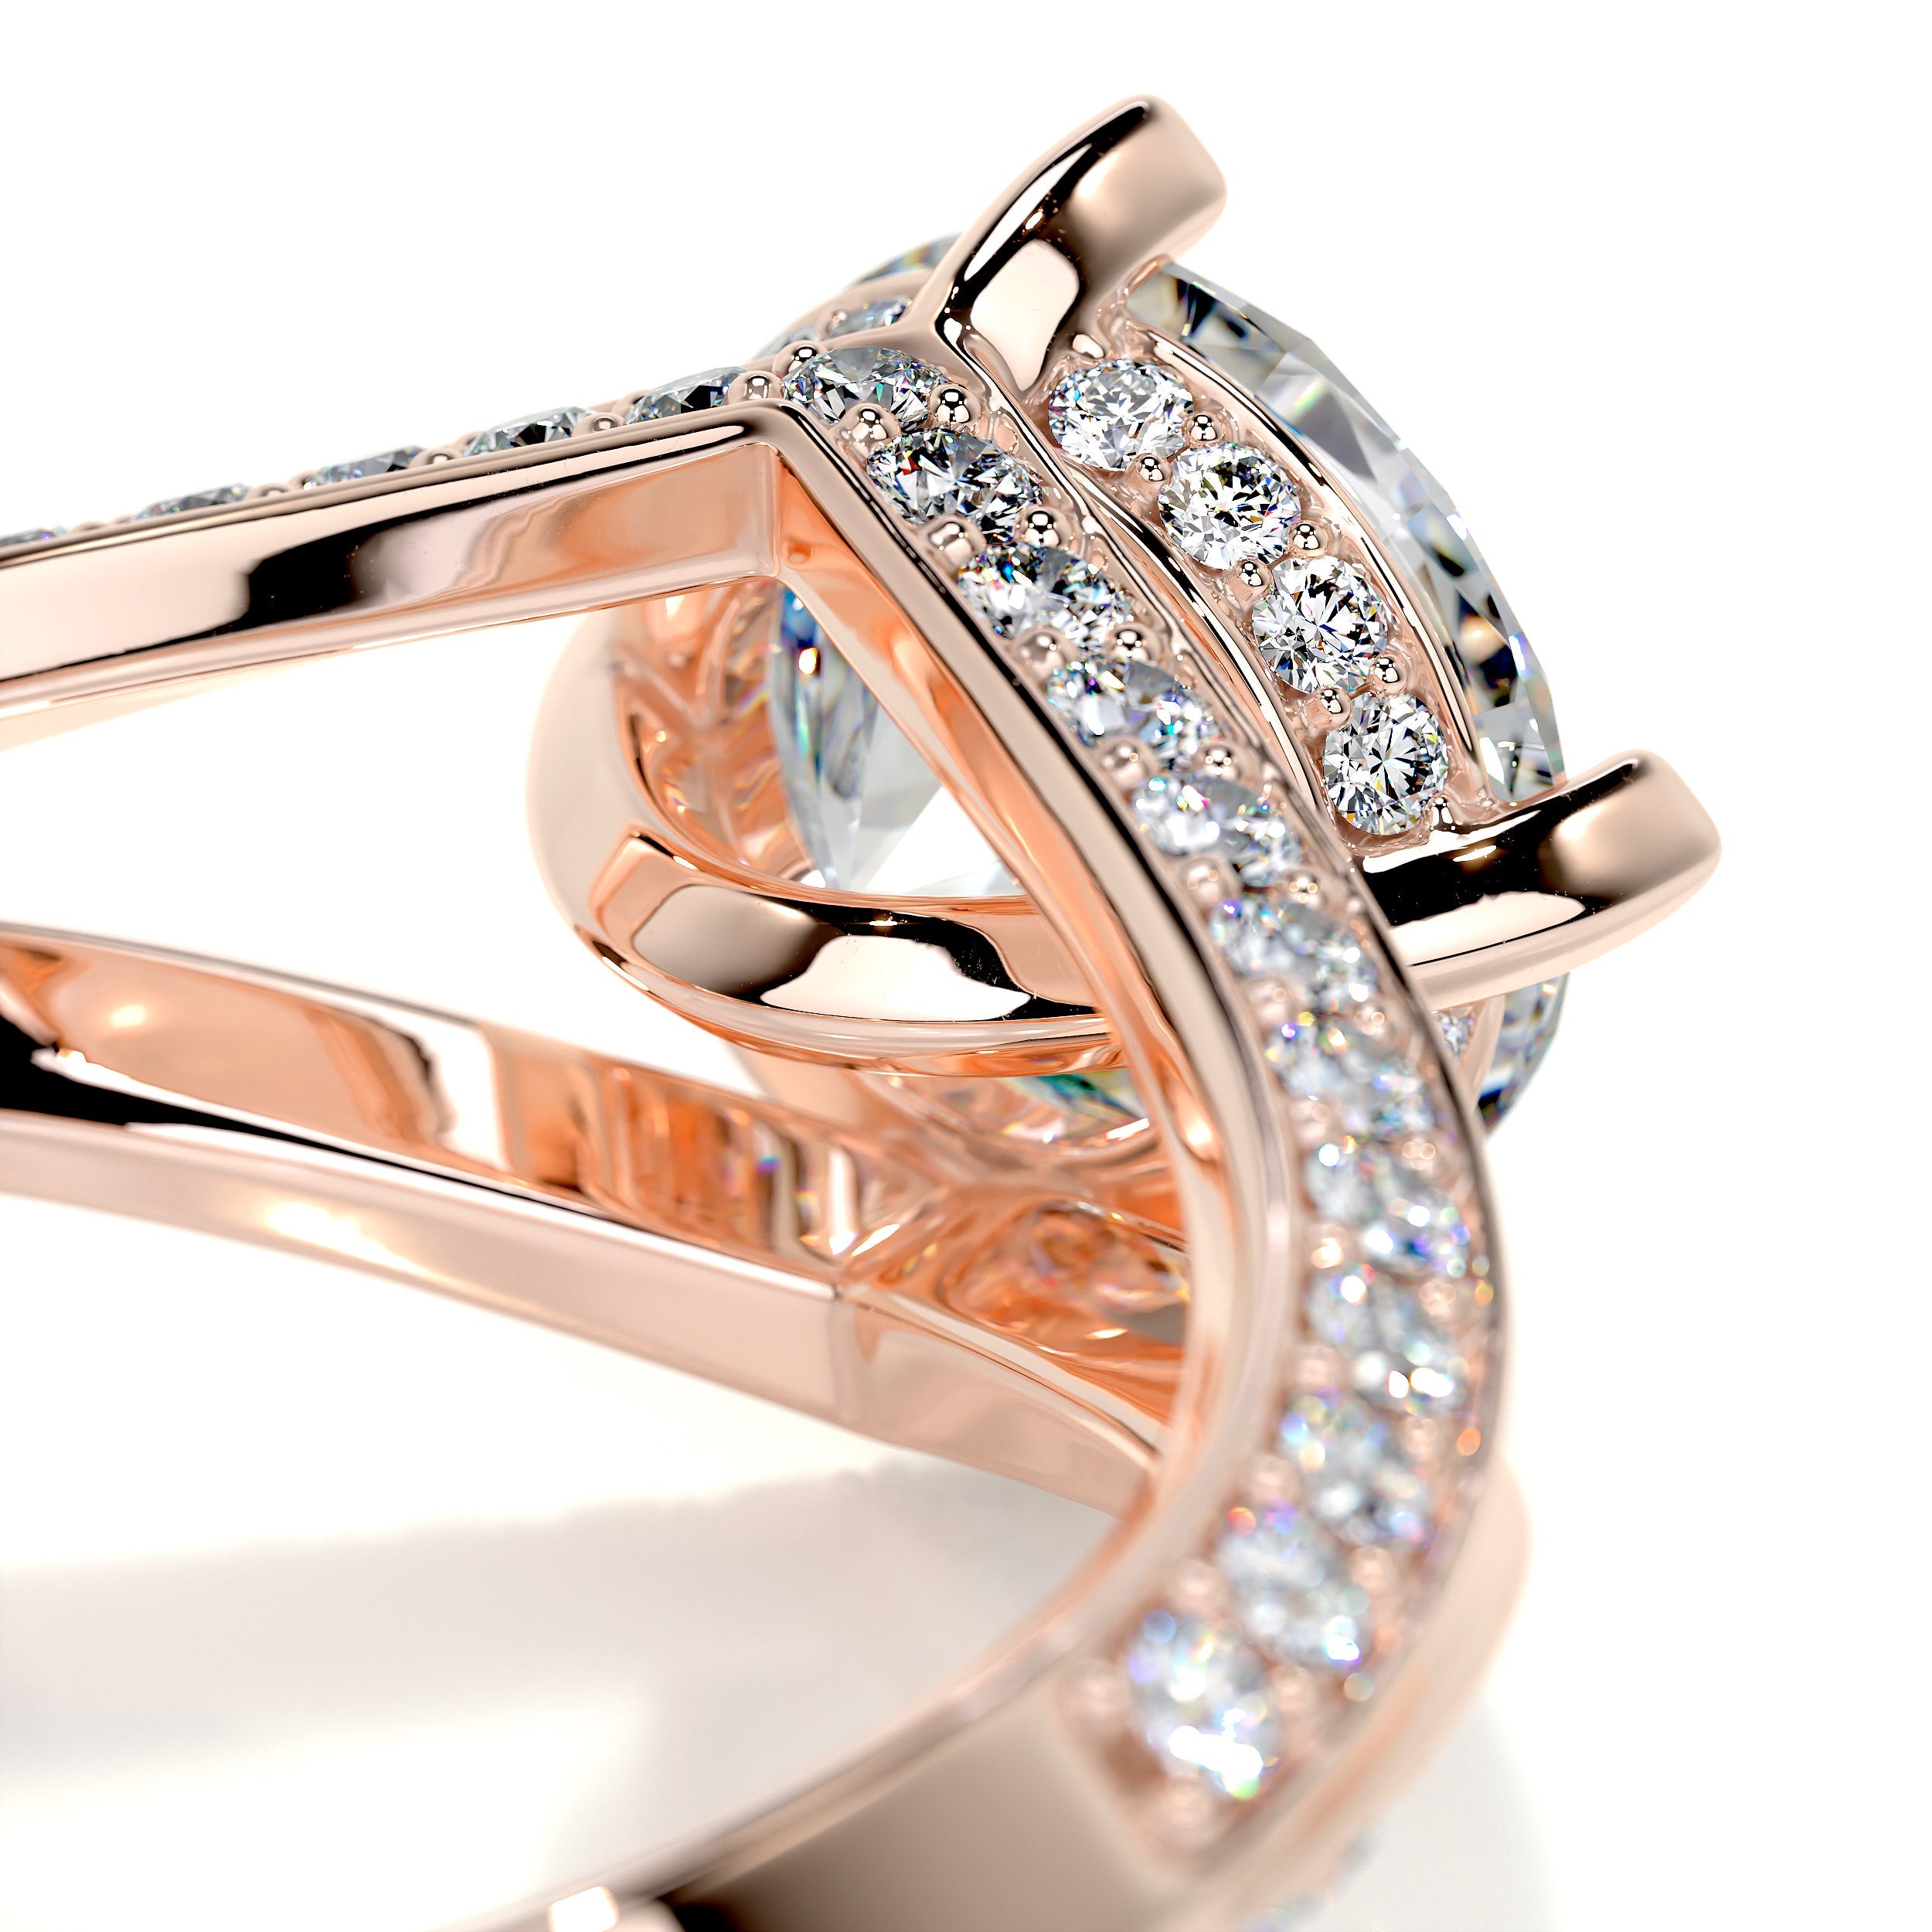 Harlow Moissanite & Diamonds Ring   (2.5 Carat) -14K Rose Gold (RTS)